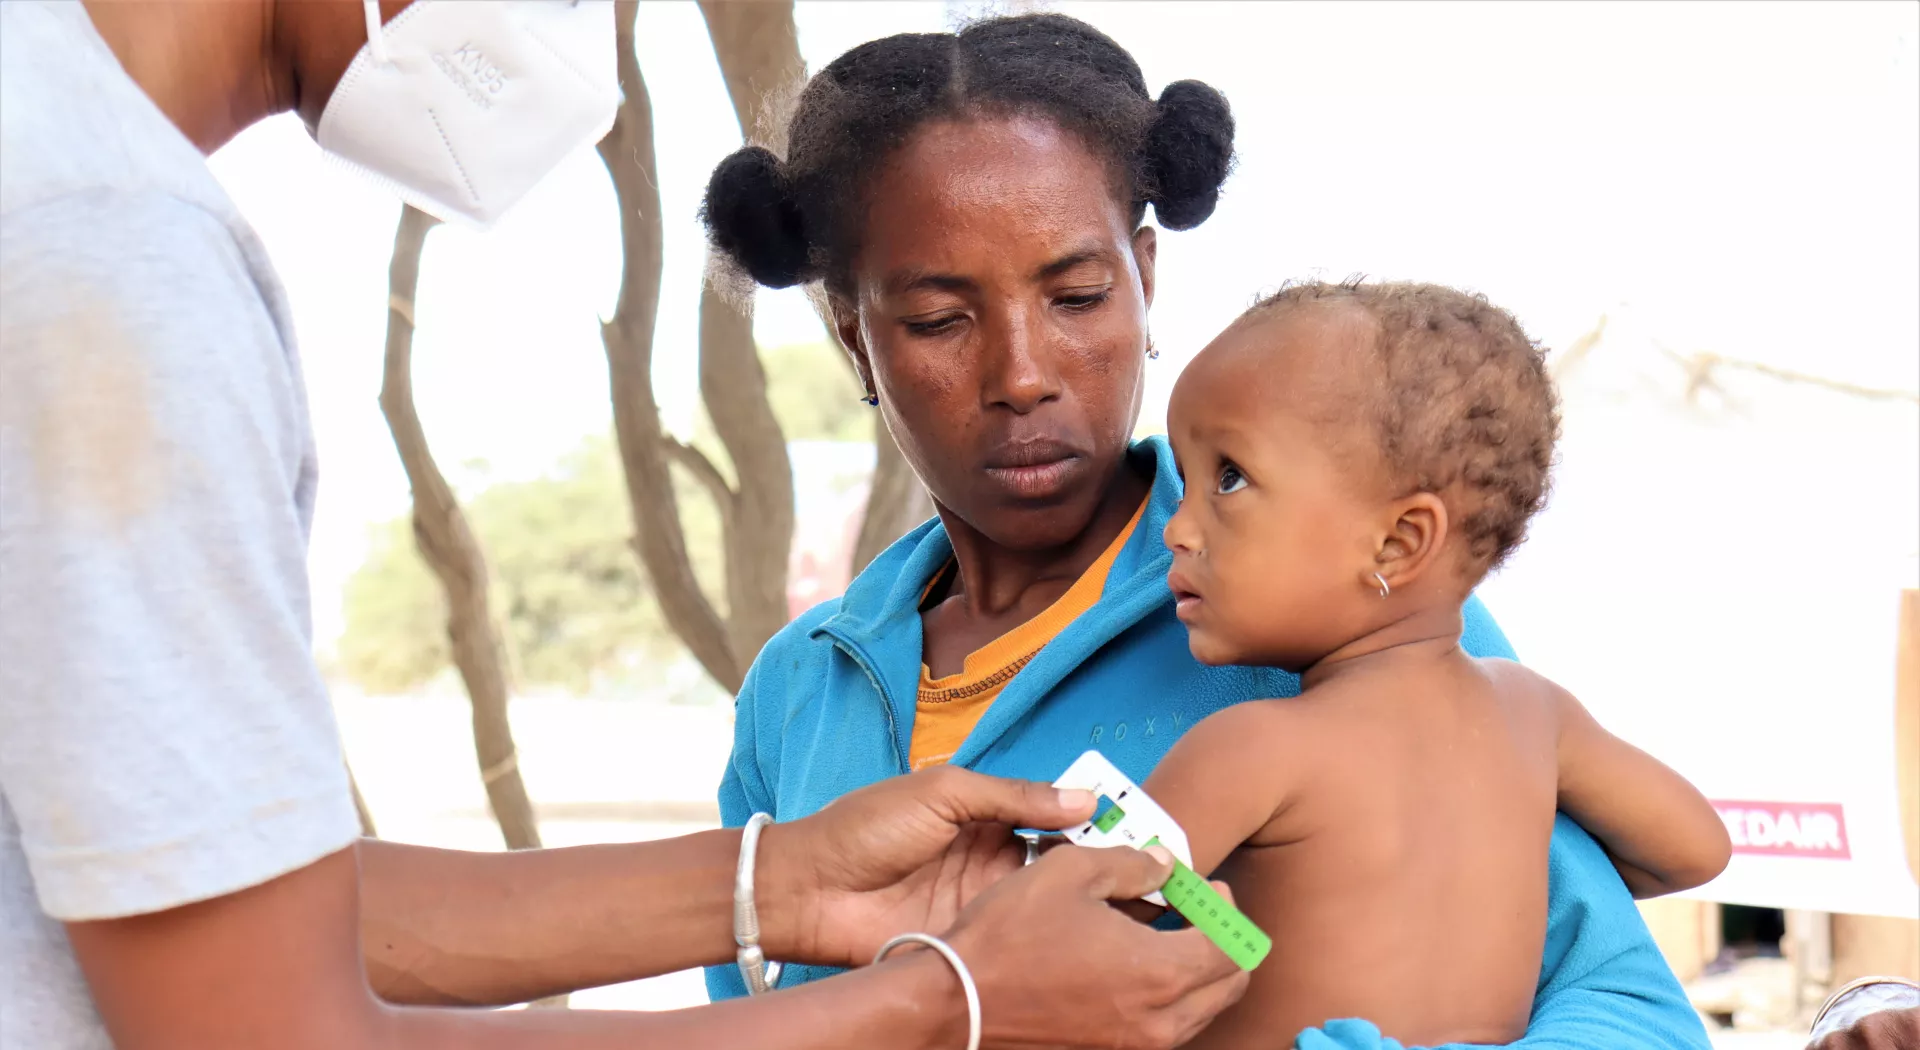 Nahrungsmittelkrise: Medair-Mitarbeiter misst den Arm eines unterernährten Kindes